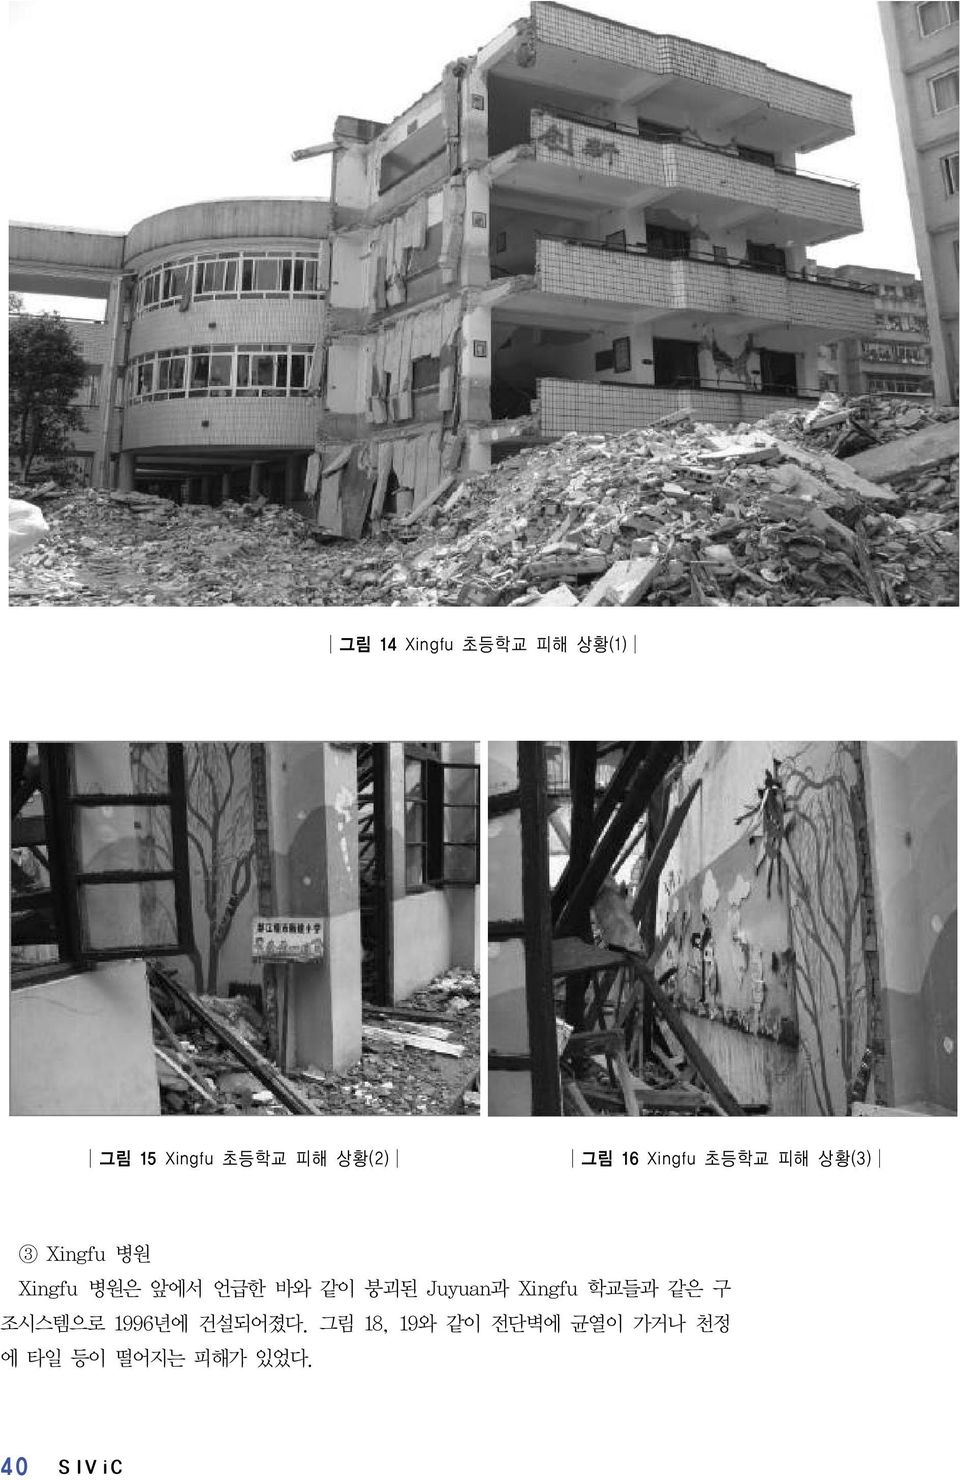 같이 붕괴된 Juyuan과 Xingfu 학교들과 같은 구 조시스템으로 1996년에 건설되어졌다.